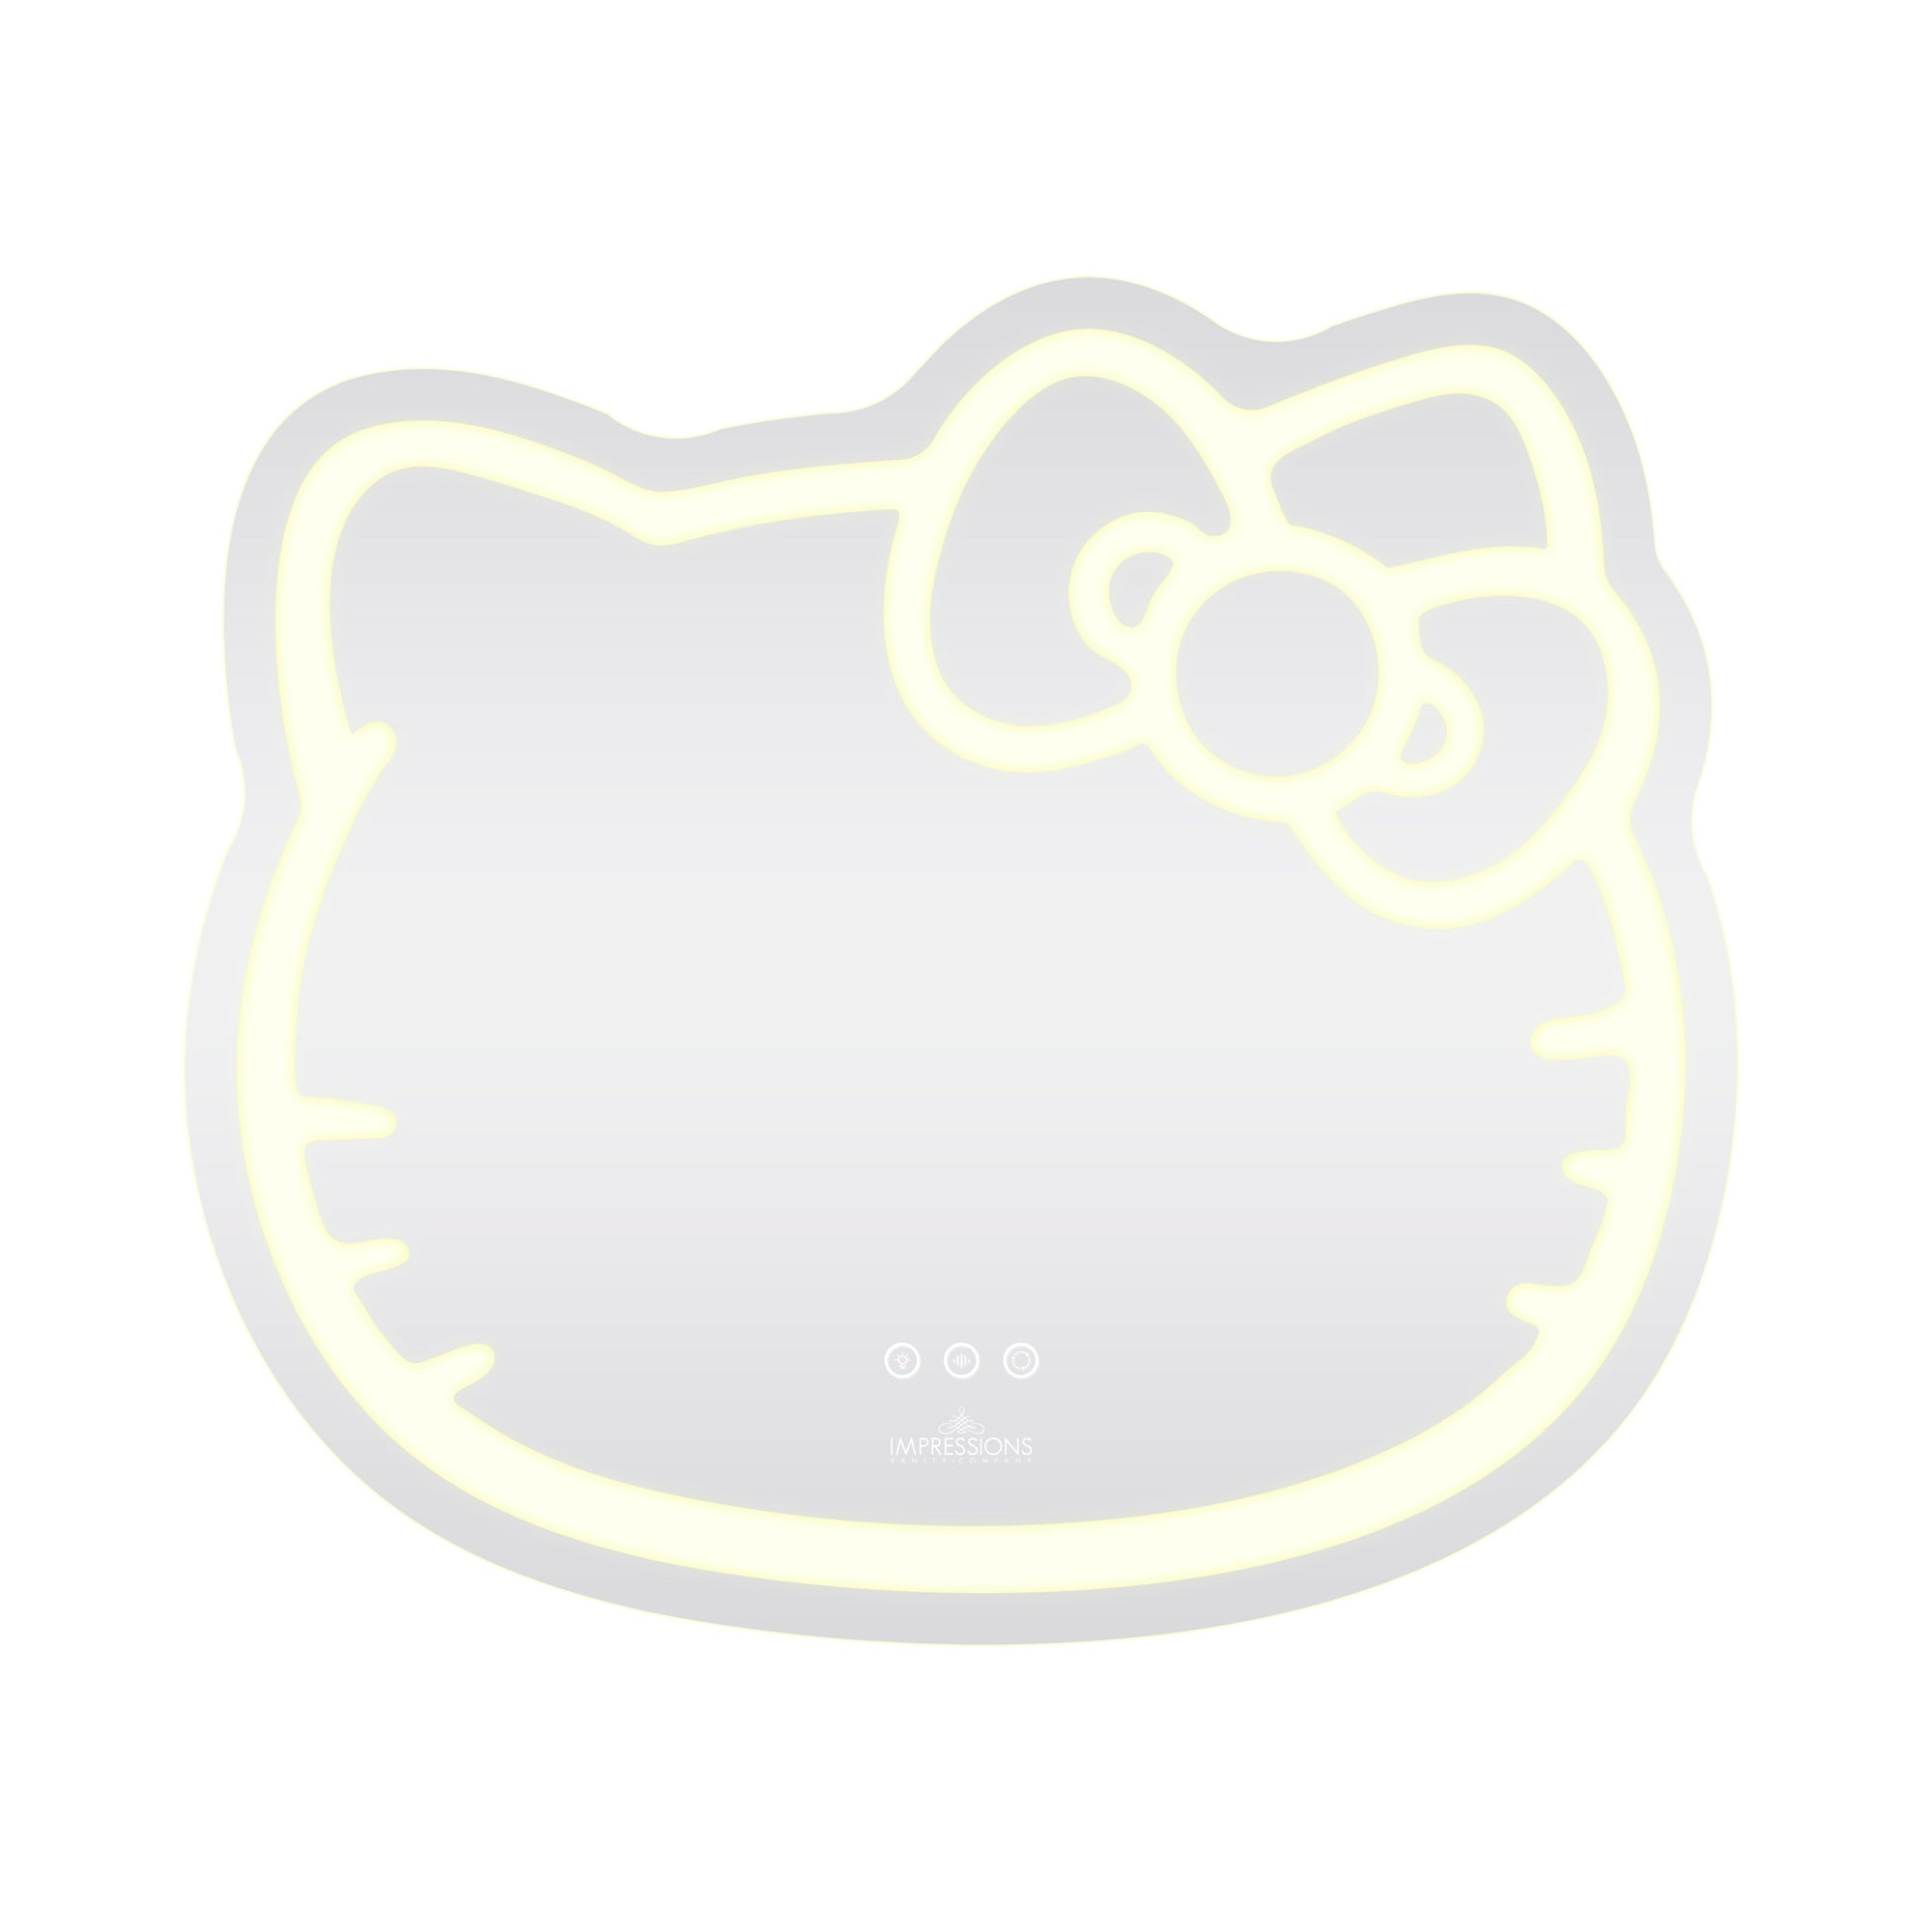 Hello Kitty - Miroir métallisé